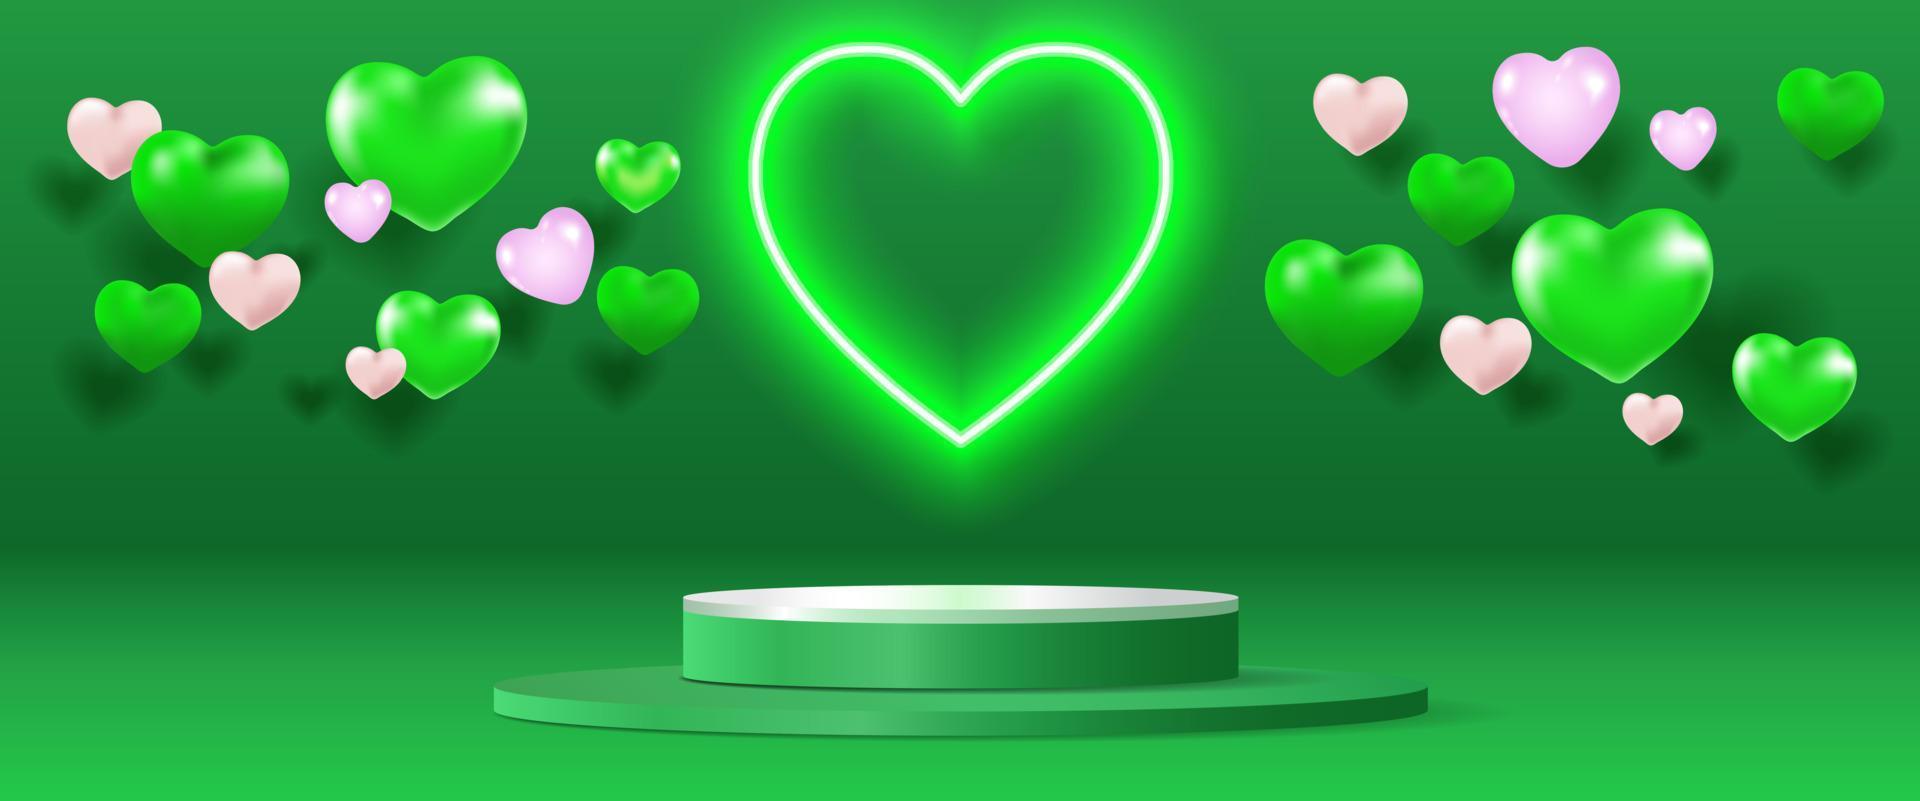 realistisch groen 3d stadium met neon licht hart vorm en hart ballon achtergrond. Valentijnsdag minimaal tafereel voor producten vitrine, Promotie Scherm. vector abstract studio kamer platform ontwerp.